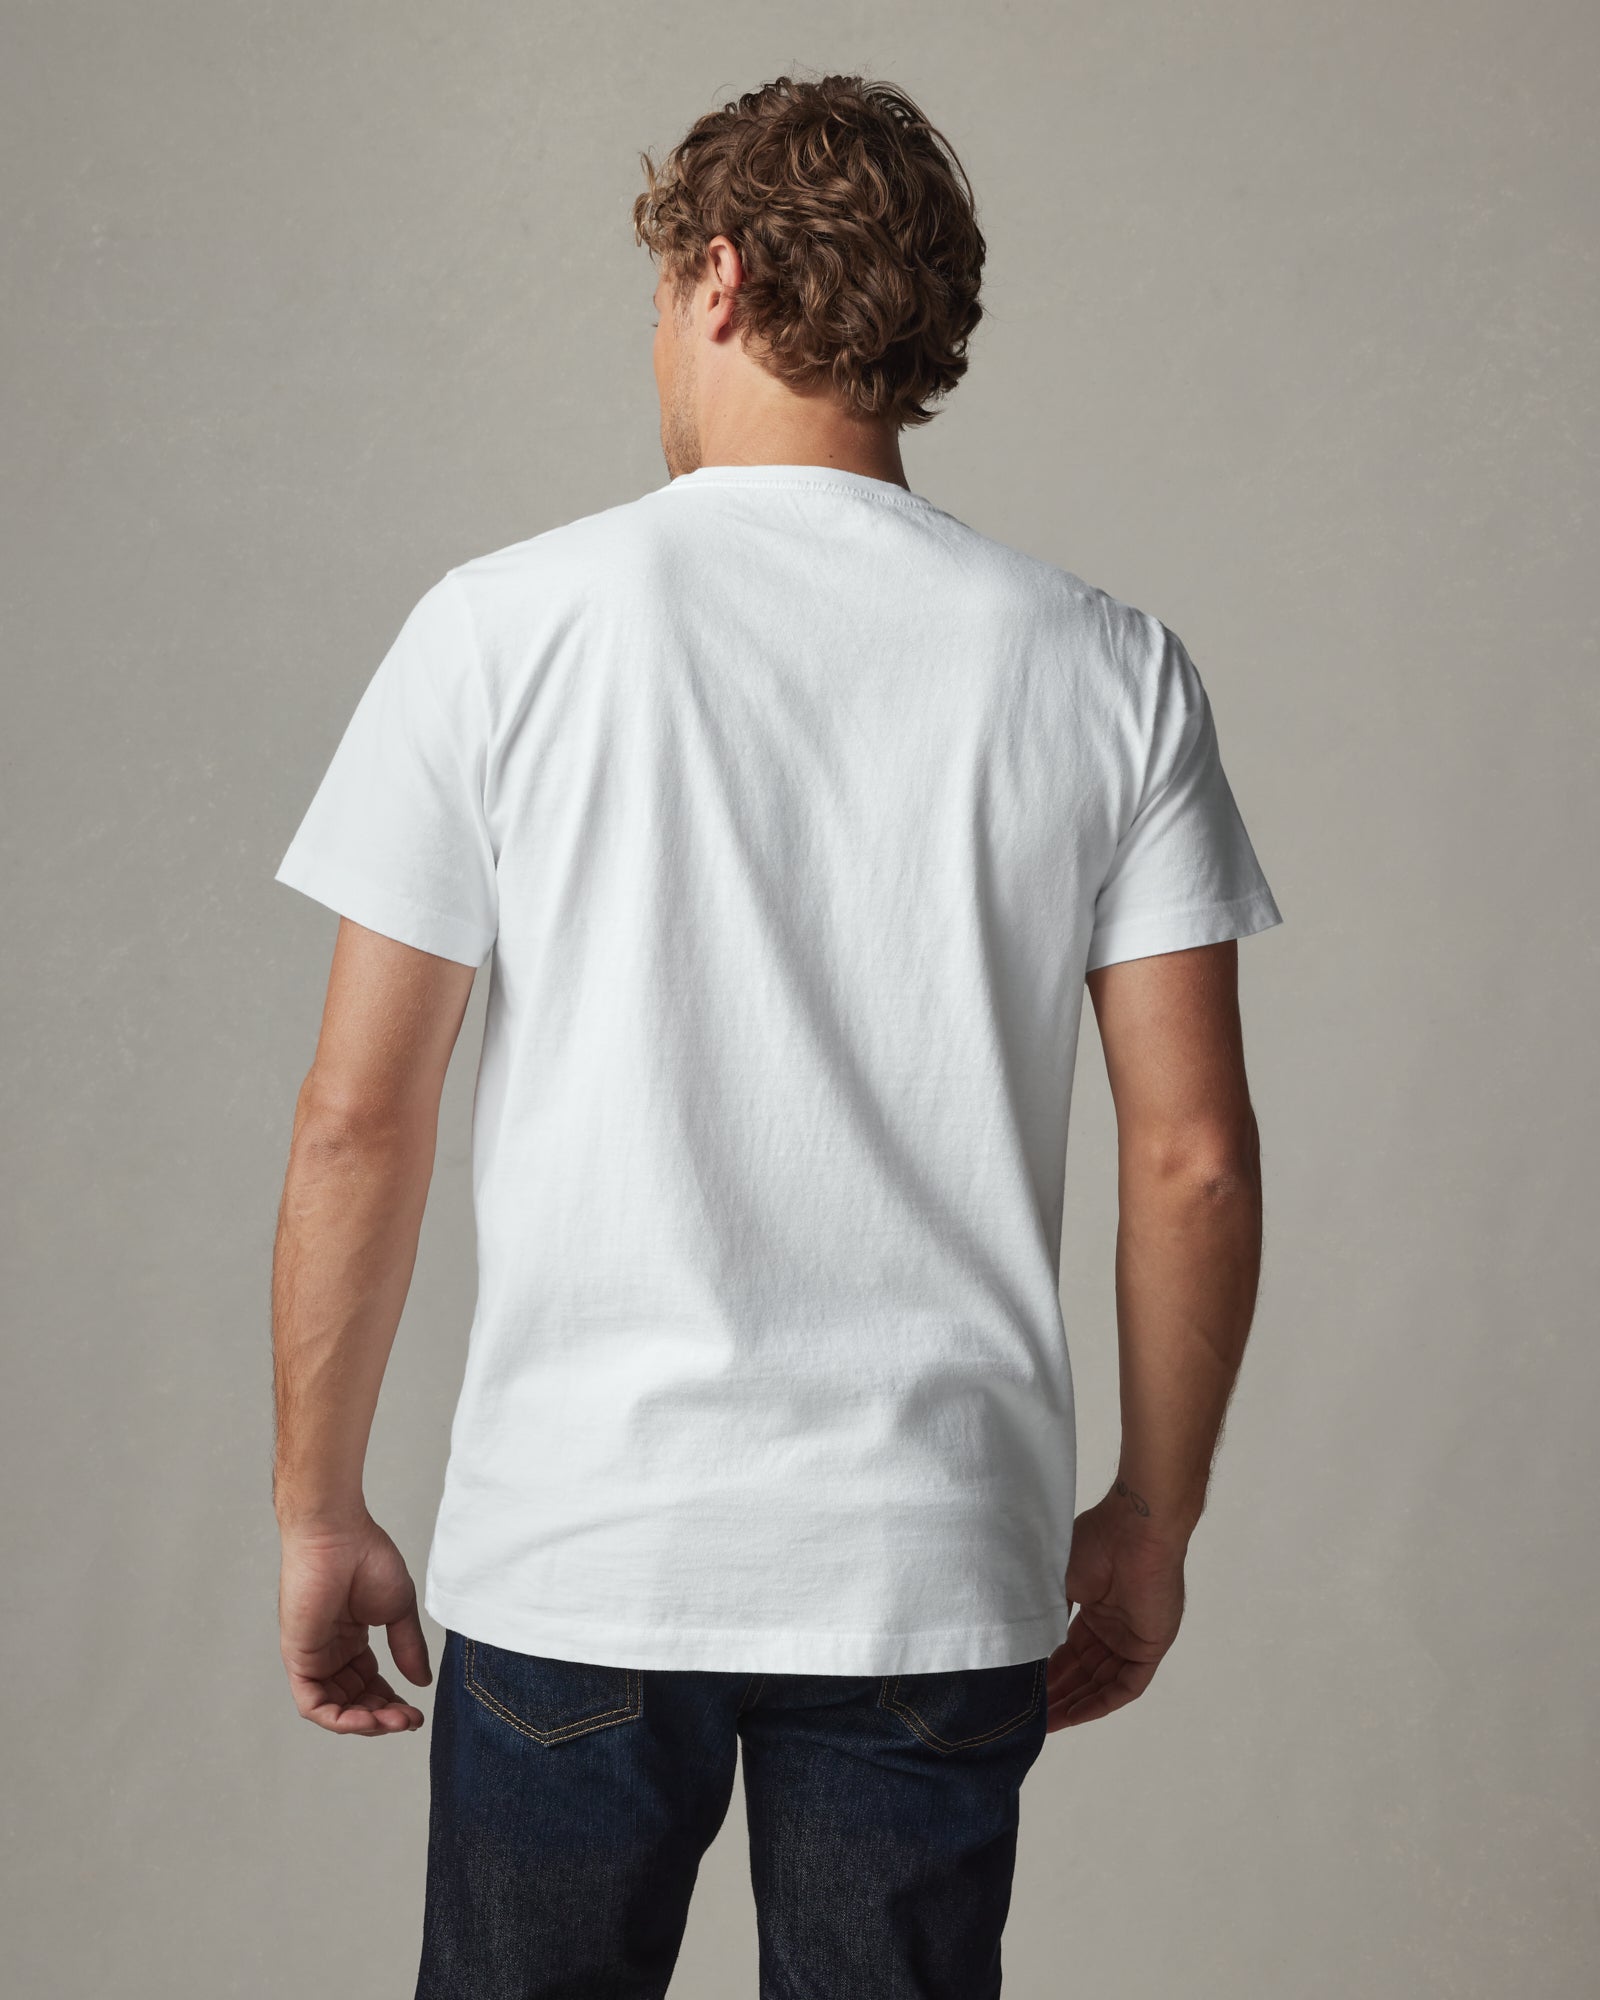 New Men's Size 3X Large Top Gun White T-shirt Rock American